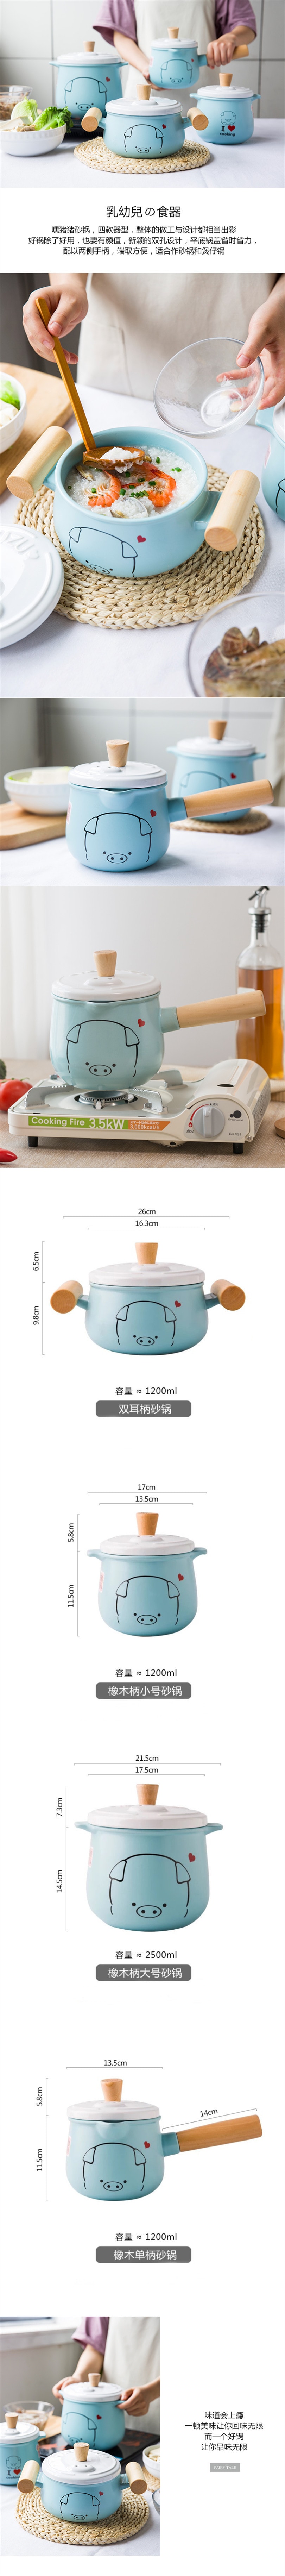 Single handle Ceramic casserole 1200ML